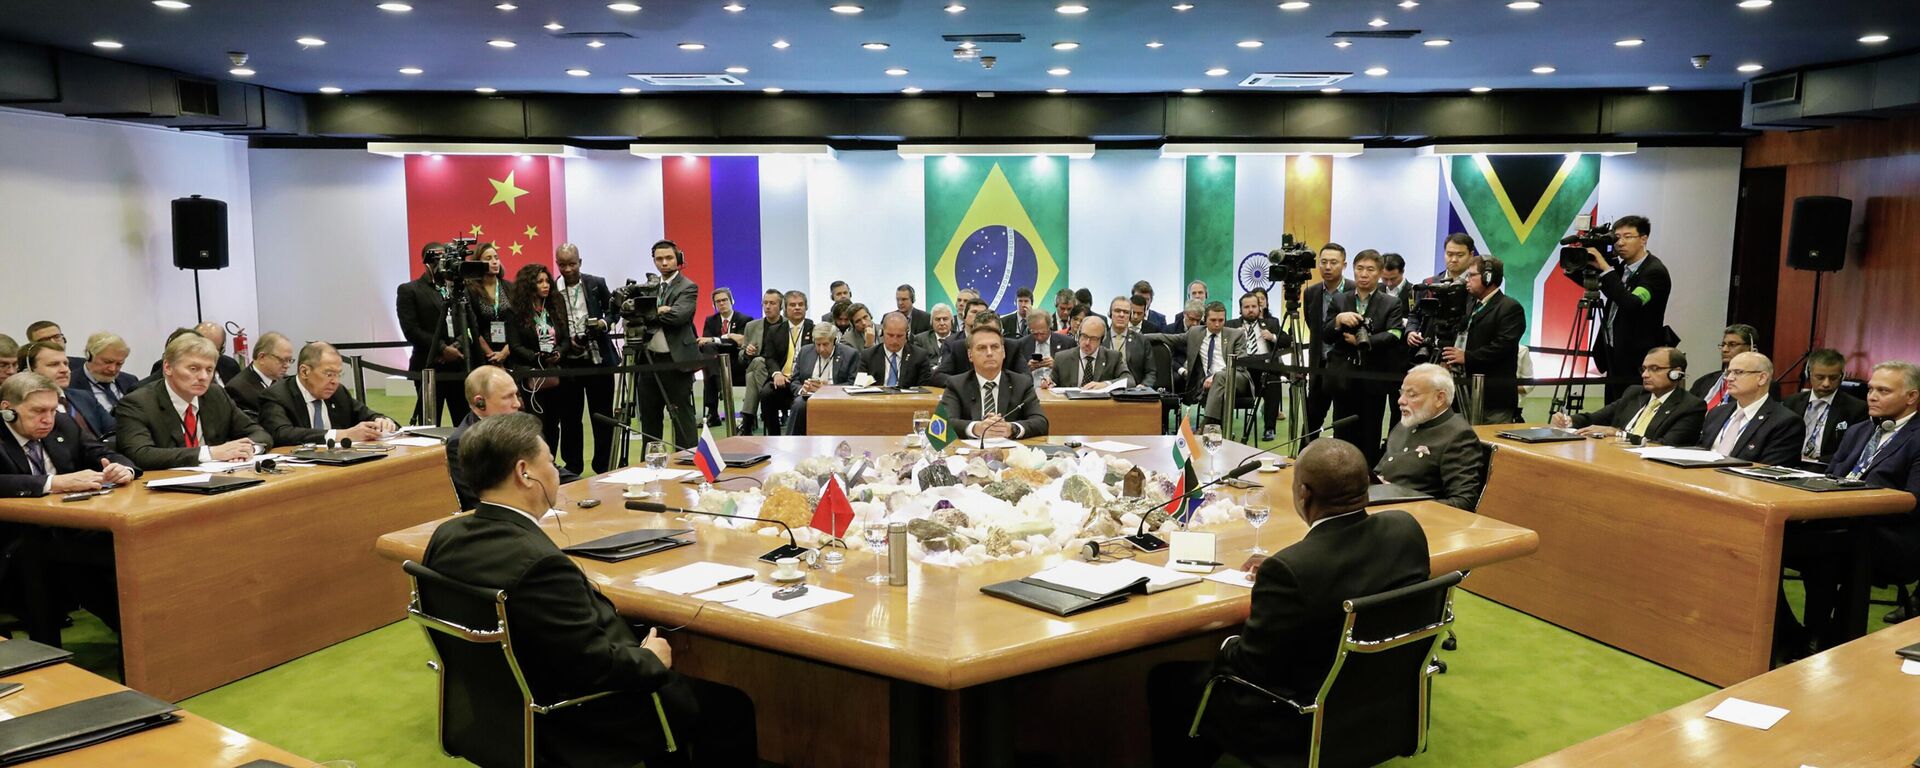 Sessão Plenária da XI Cúpula do Brics, em Brasília, em novembro de 2019 (foto de arquivo) - Sputnik Brasil, 1920, 15.07.2022